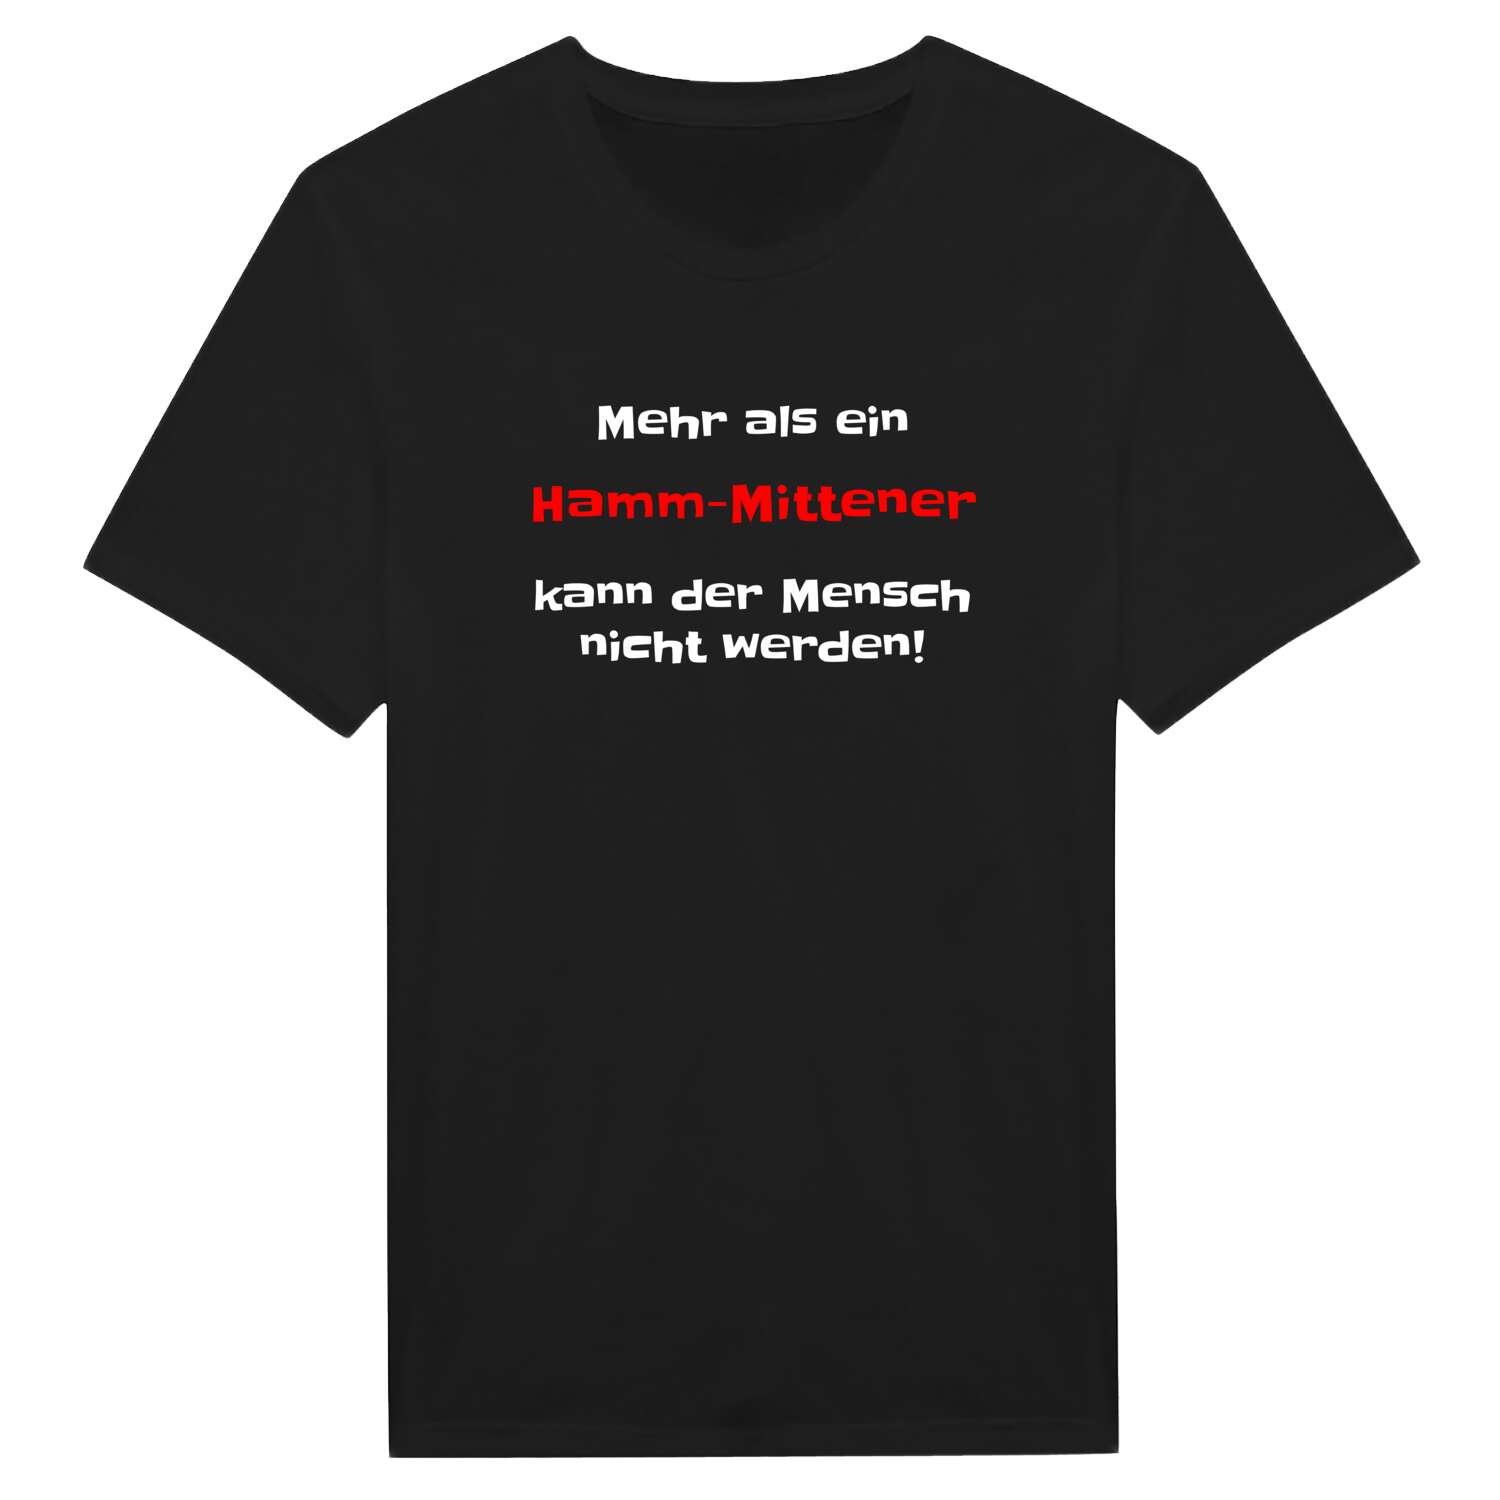 Hamm-Mitte T-Shirt »Mehr als ein«